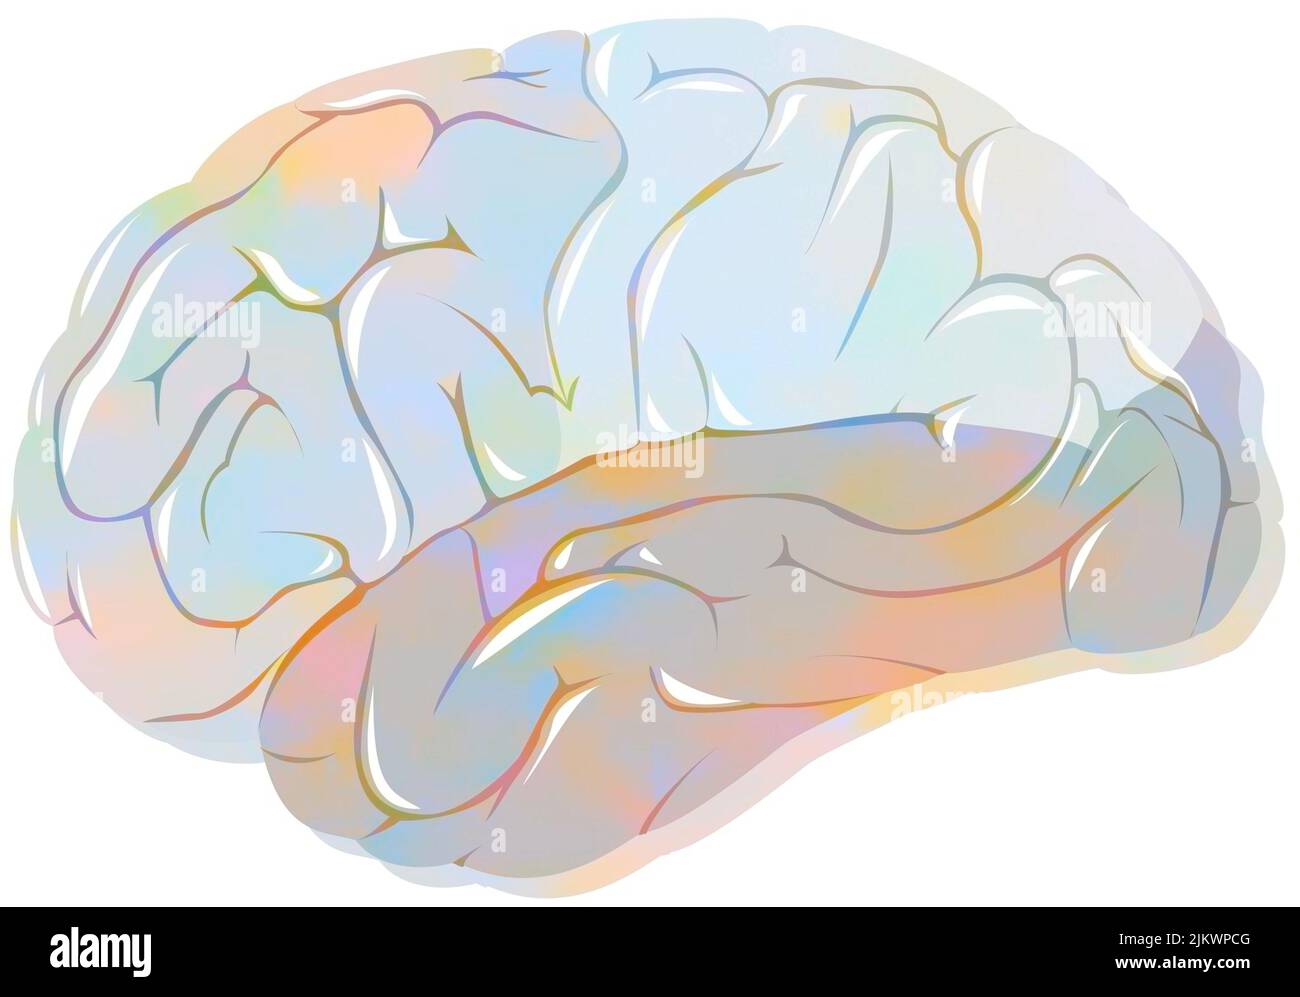 Lobi del cervello con lobi frontali, parietali, temporali e occipitali. Foto Stock